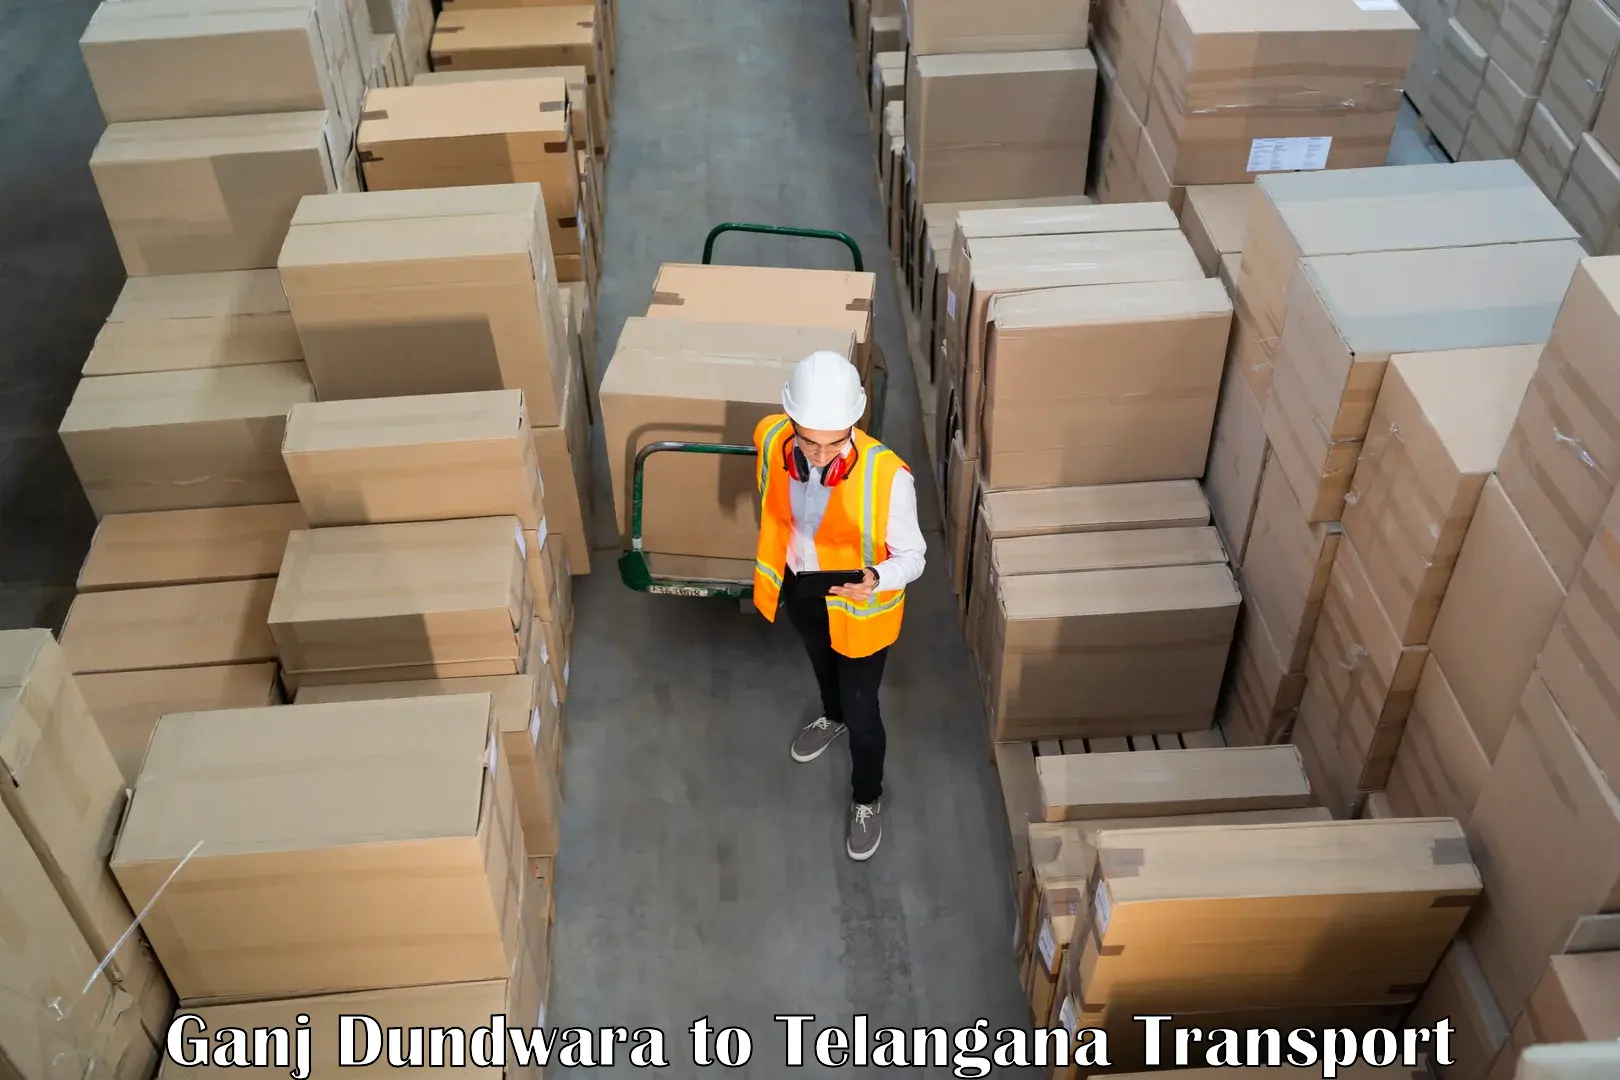 Road transport services Ganj Dundwara to Jammikunta